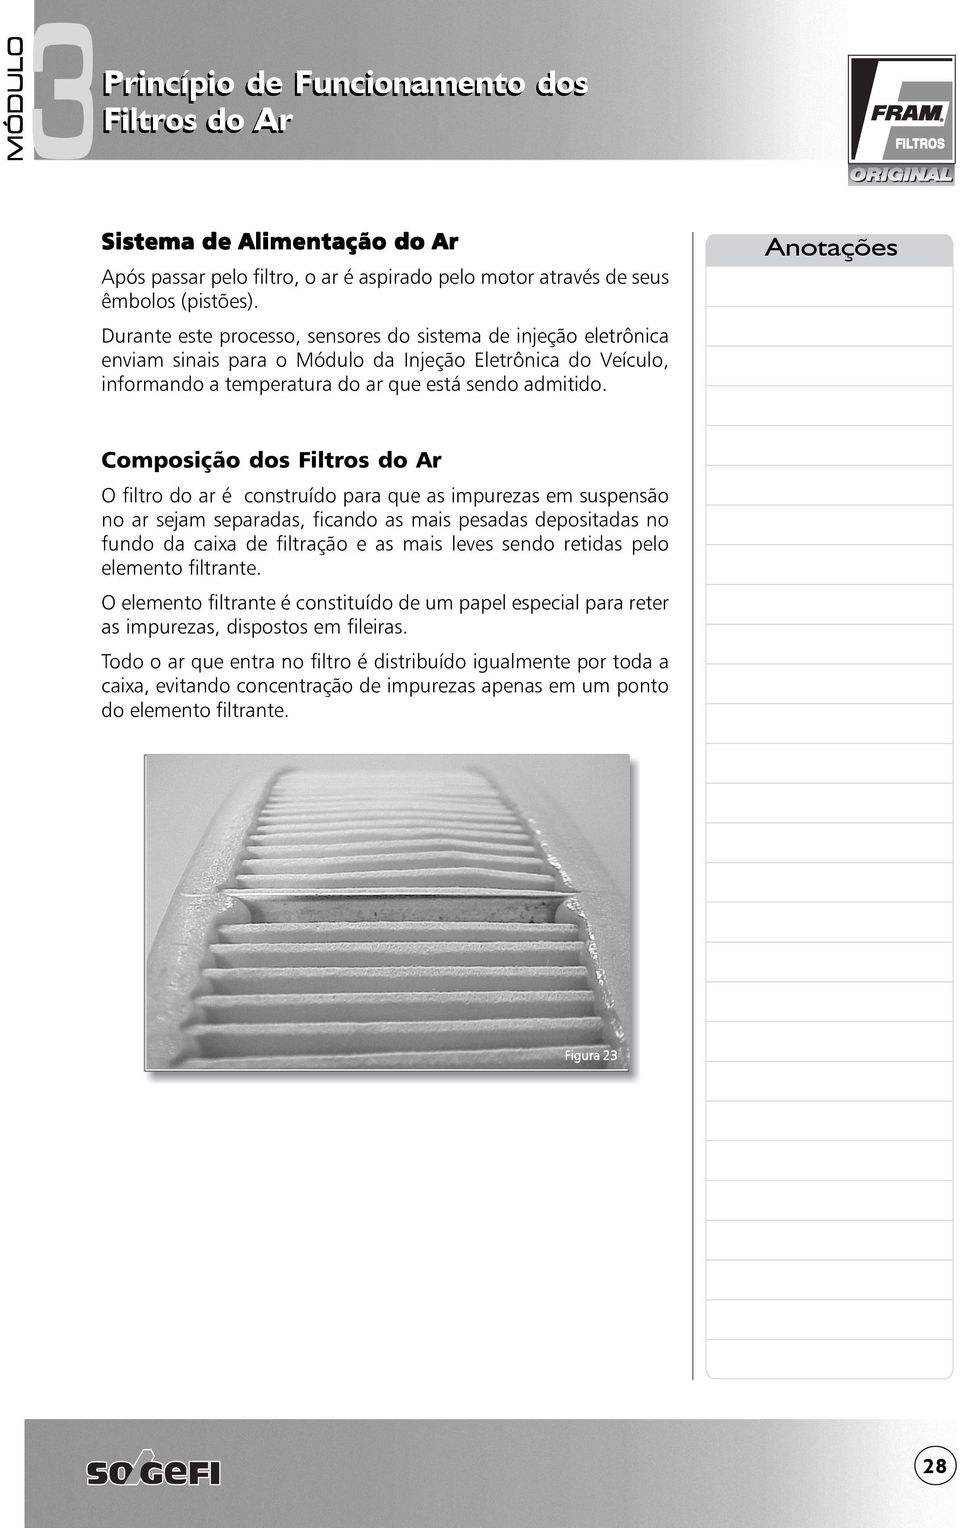 Composição dos O filtro do ar é construído para que as impurezas em suspensão no ar sejam separadas, ficando as mais pesadas depositadas no fundo da caixa de filtração e as mais leves sendo